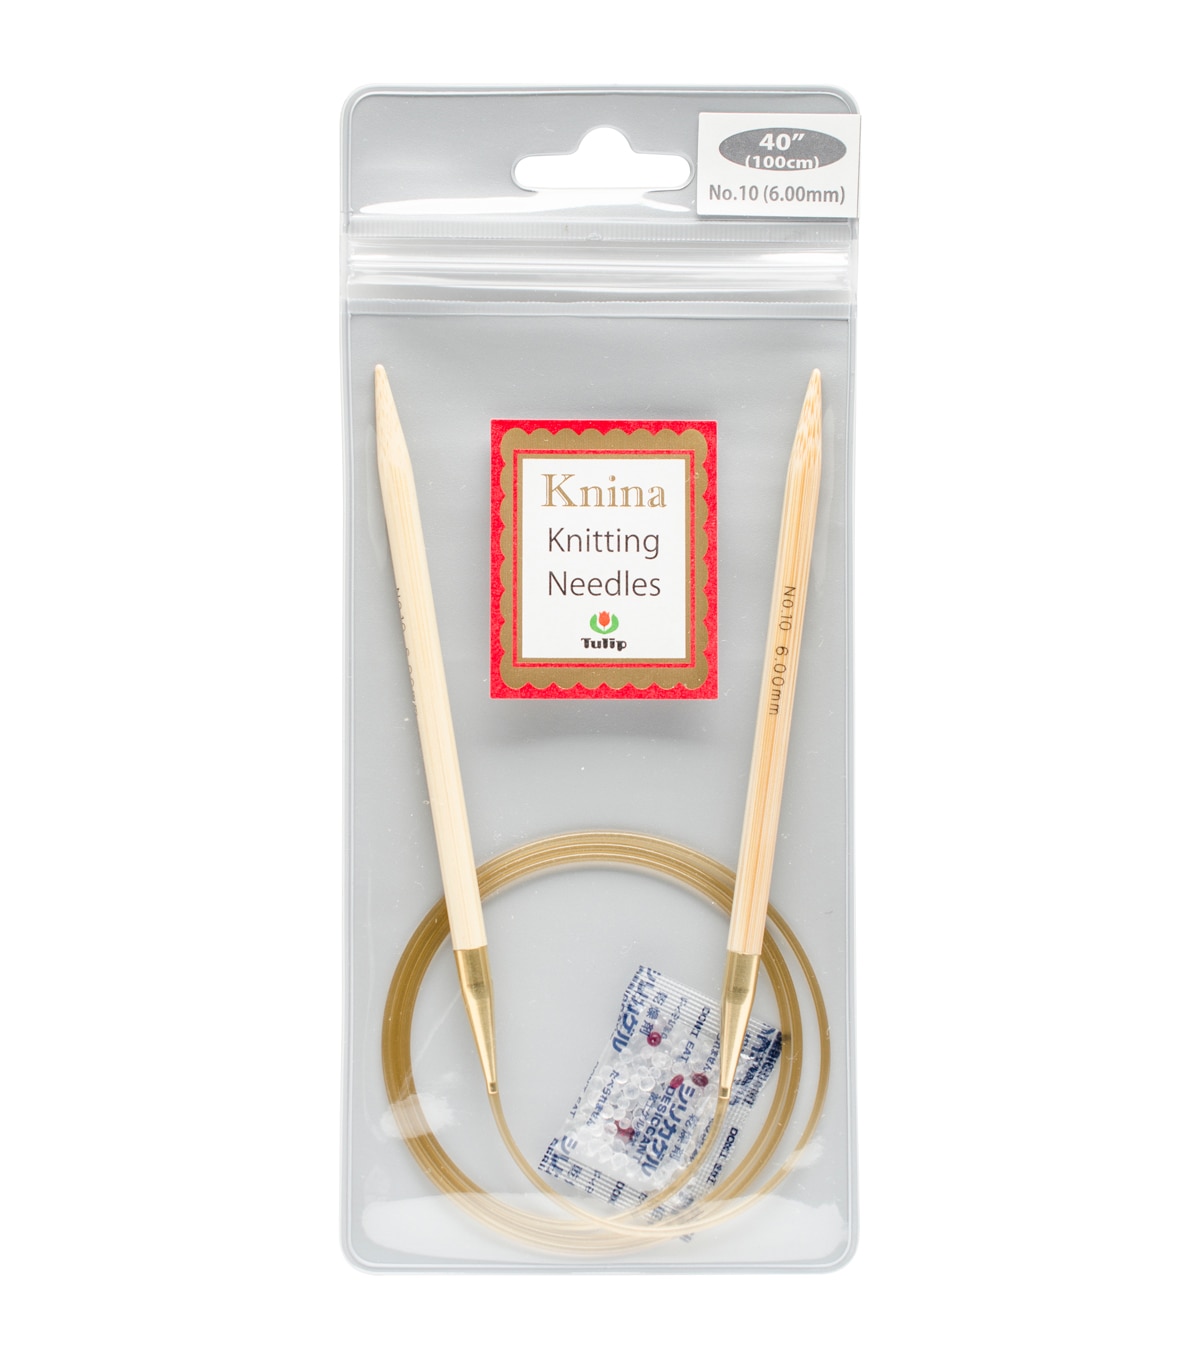 Tulip Needle Company Knina Knitting Needles 40'' Size 10 | JOANN